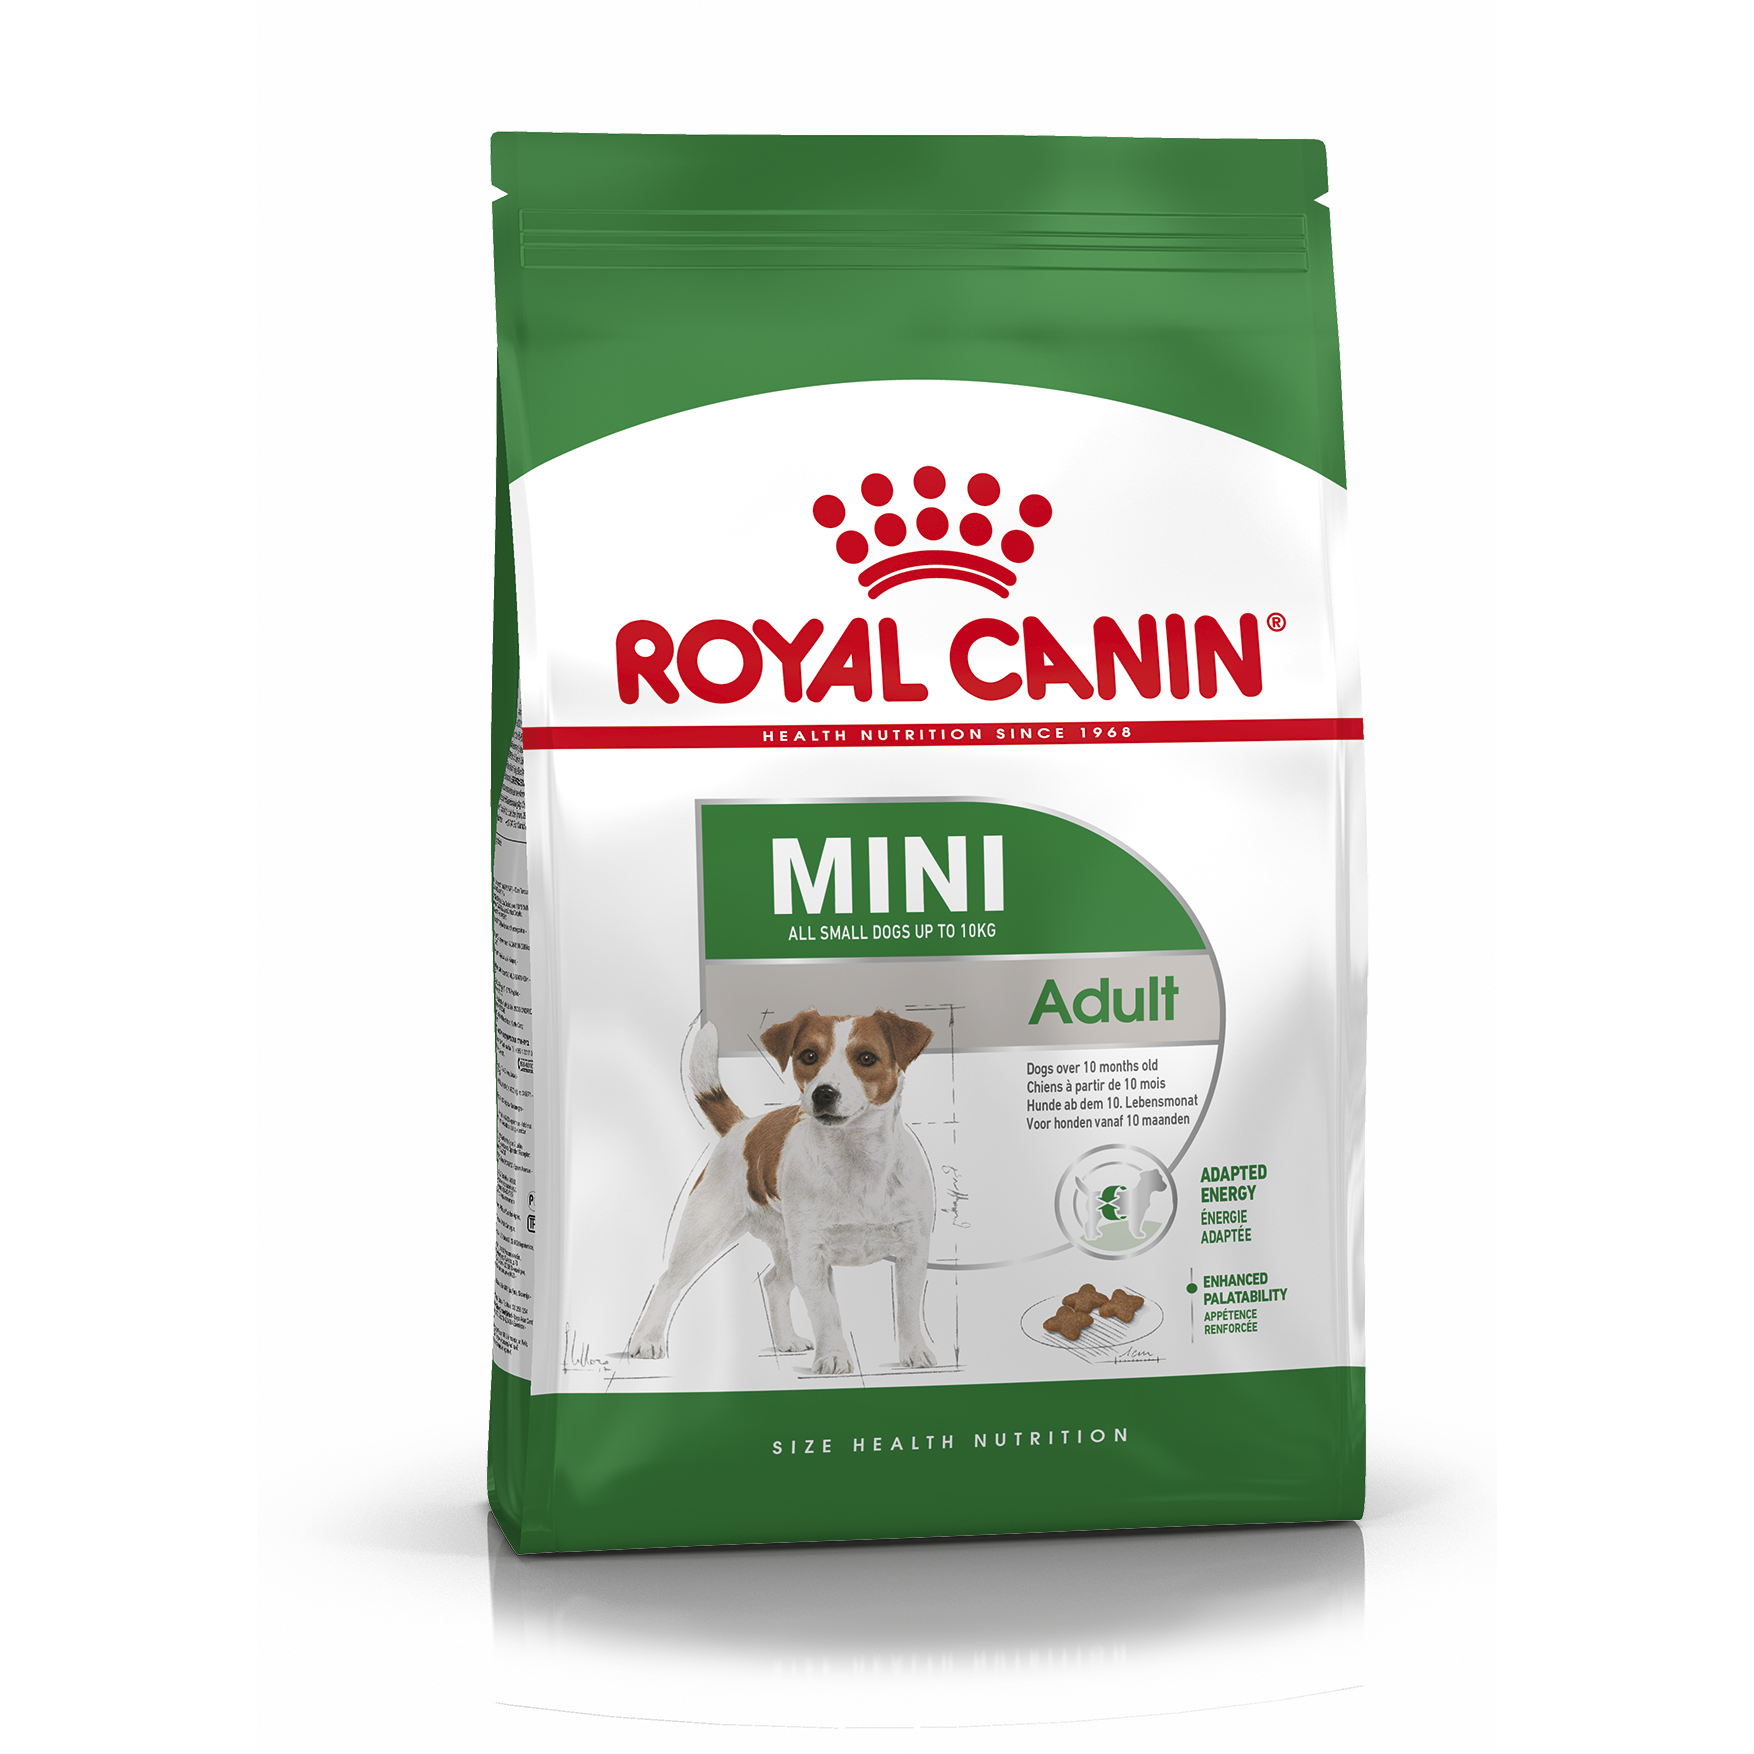 Повседневный корм Royal Canin (Роял Канин) для собаки